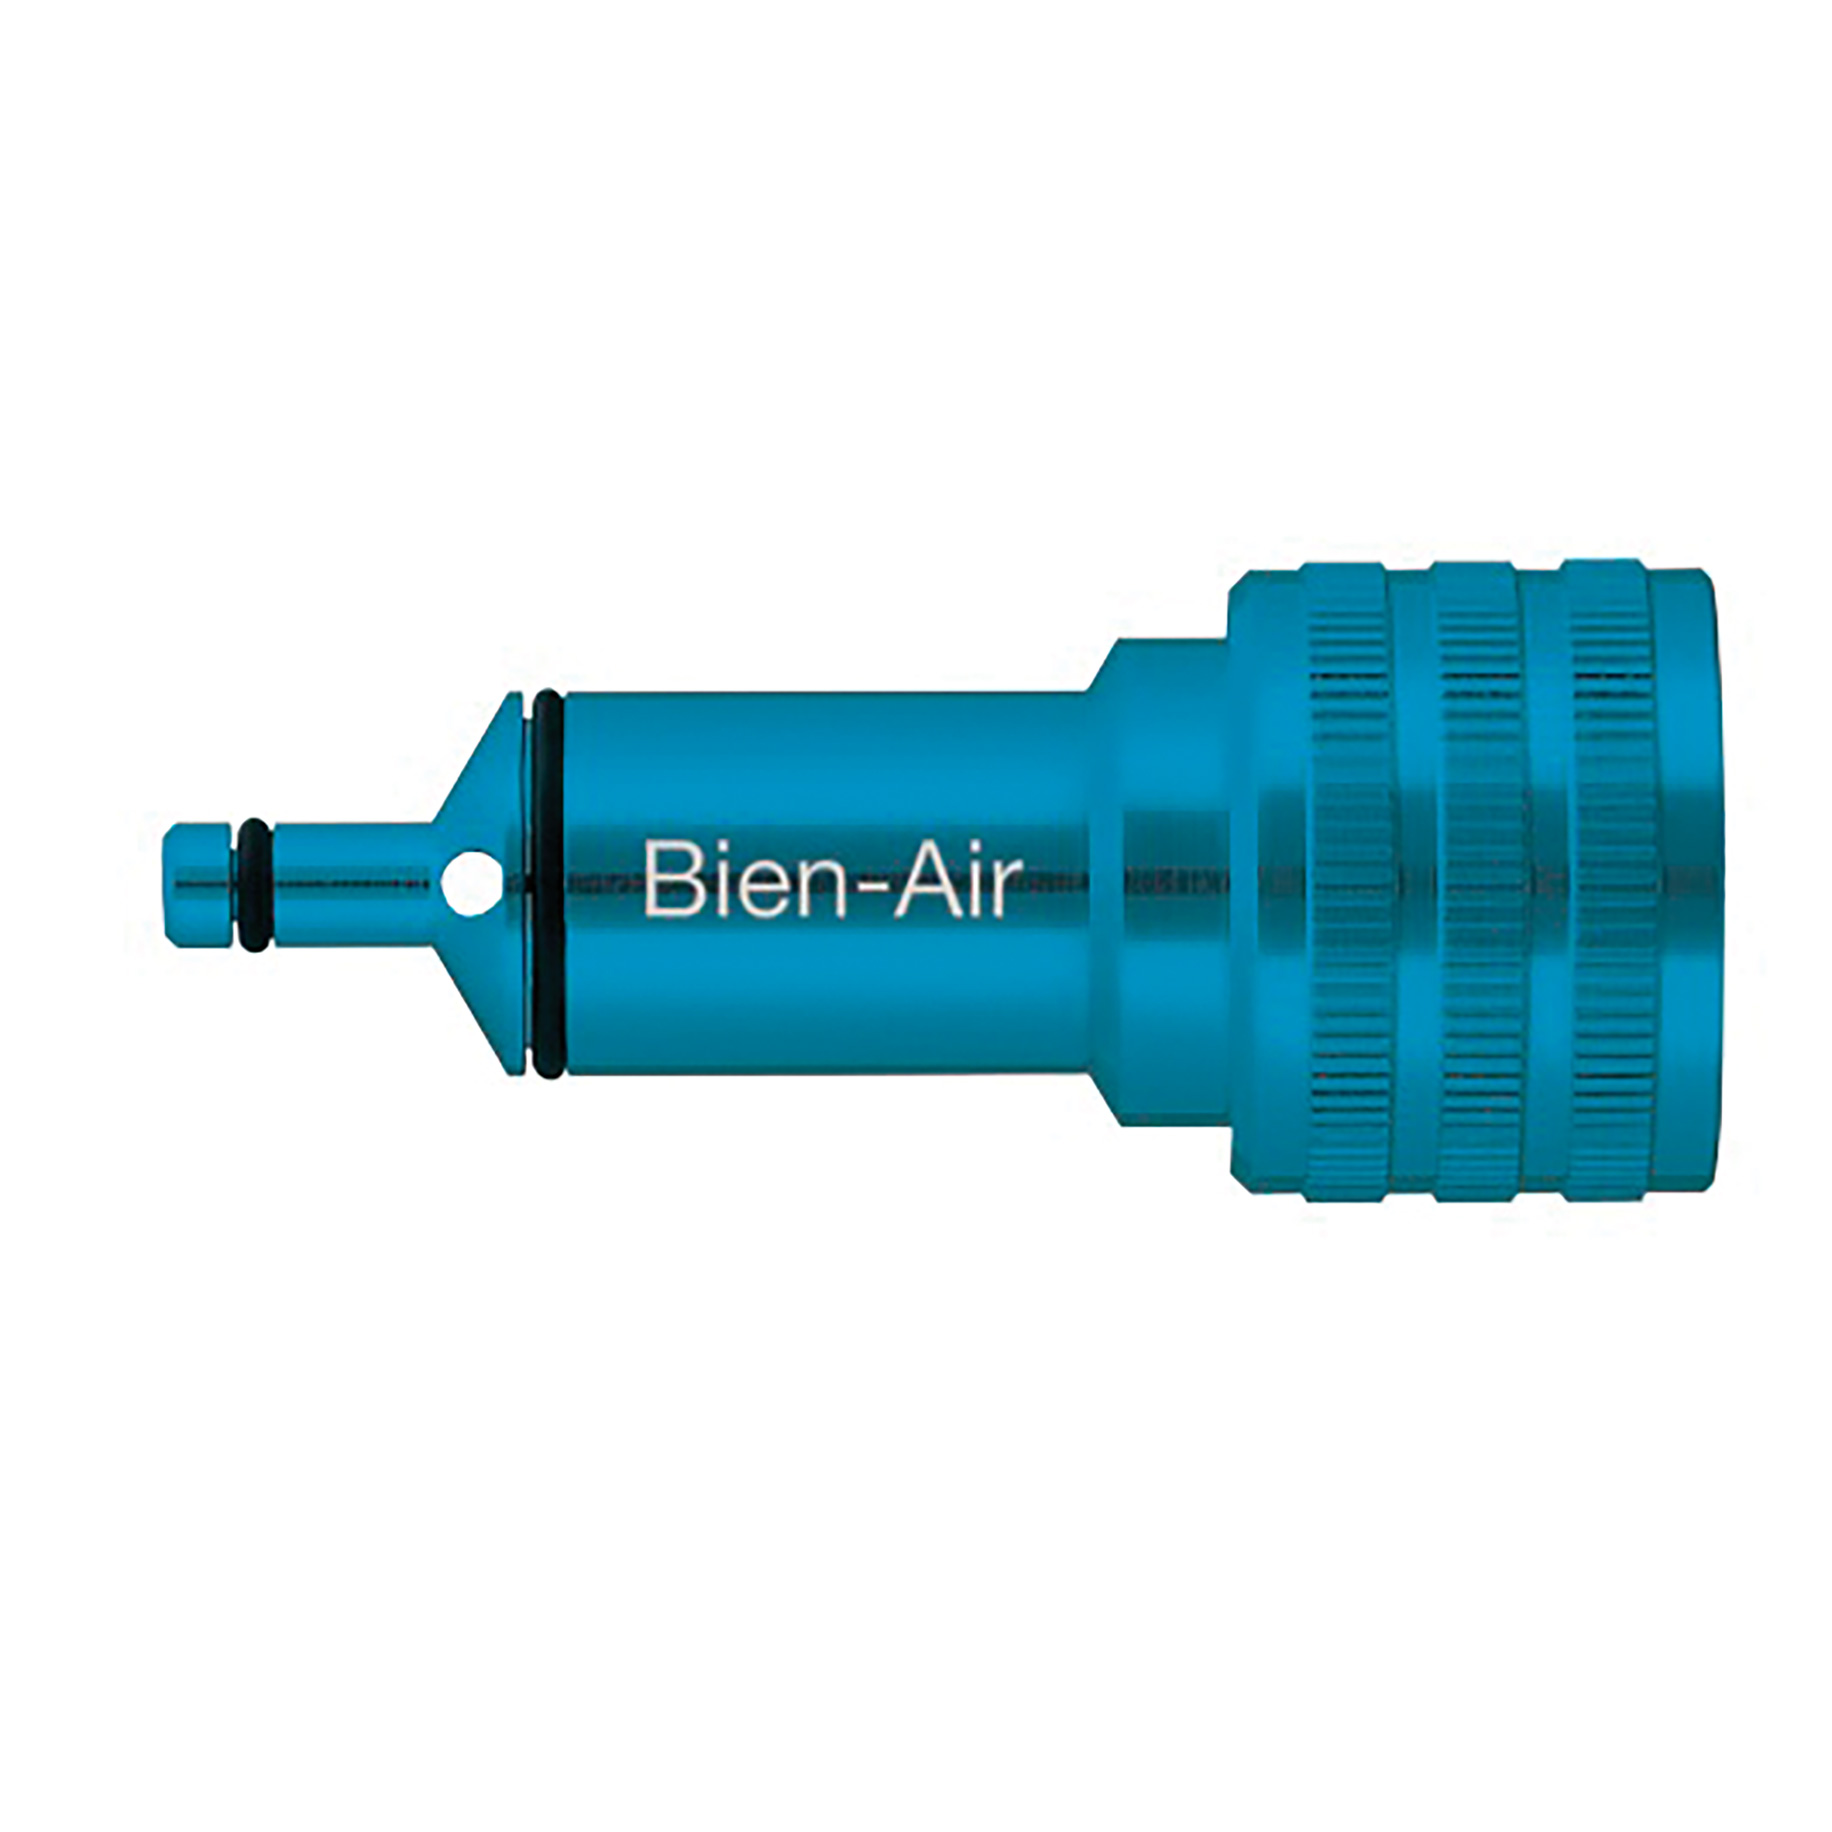 Pana Spray Plus Nozzle for: Bien Air Unifix Coupling 